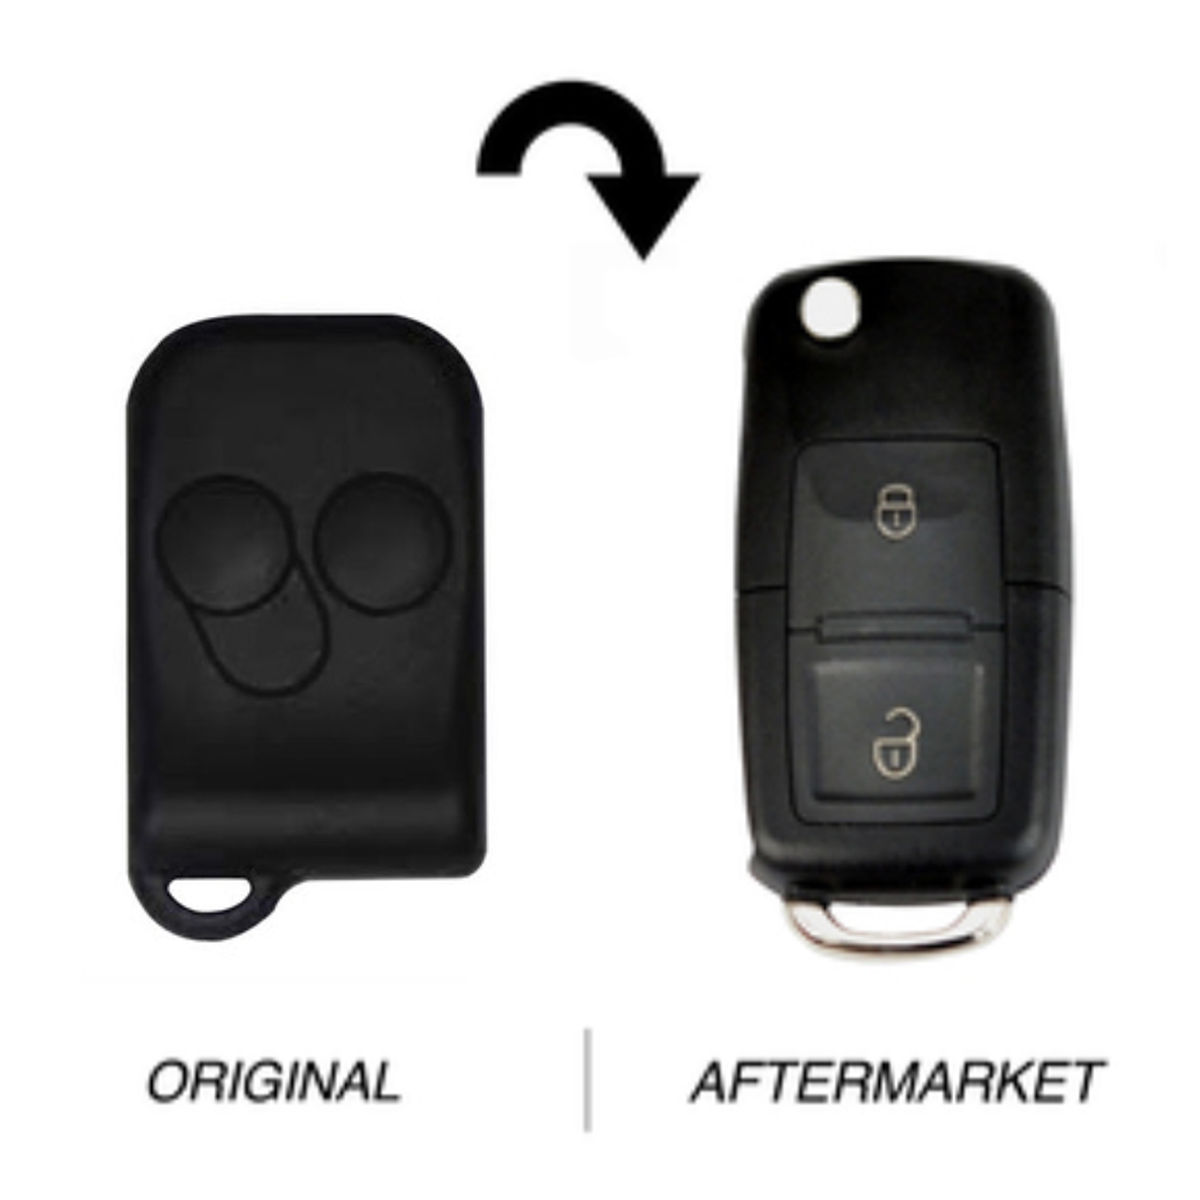 Ford compatible Falcon 2 button flip Key F021 Smart Lock remote